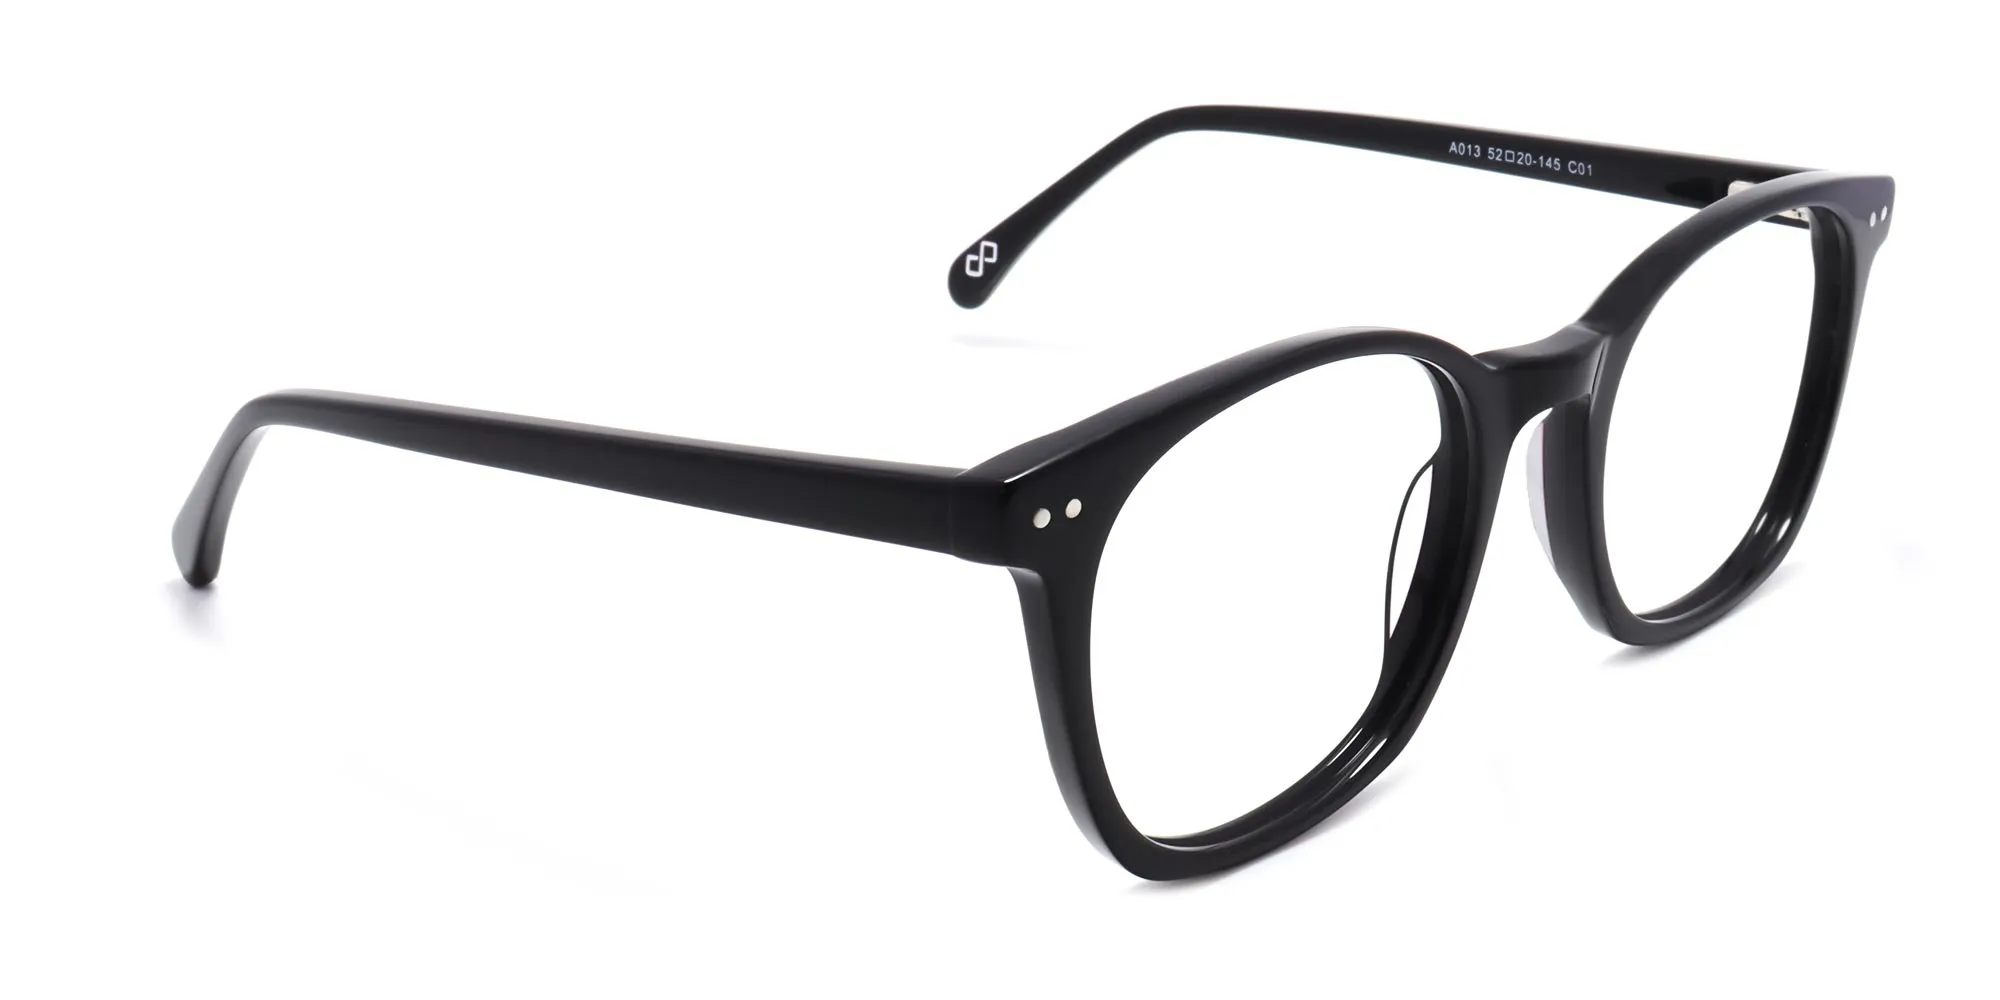 black acetate full rim glasses frame-2